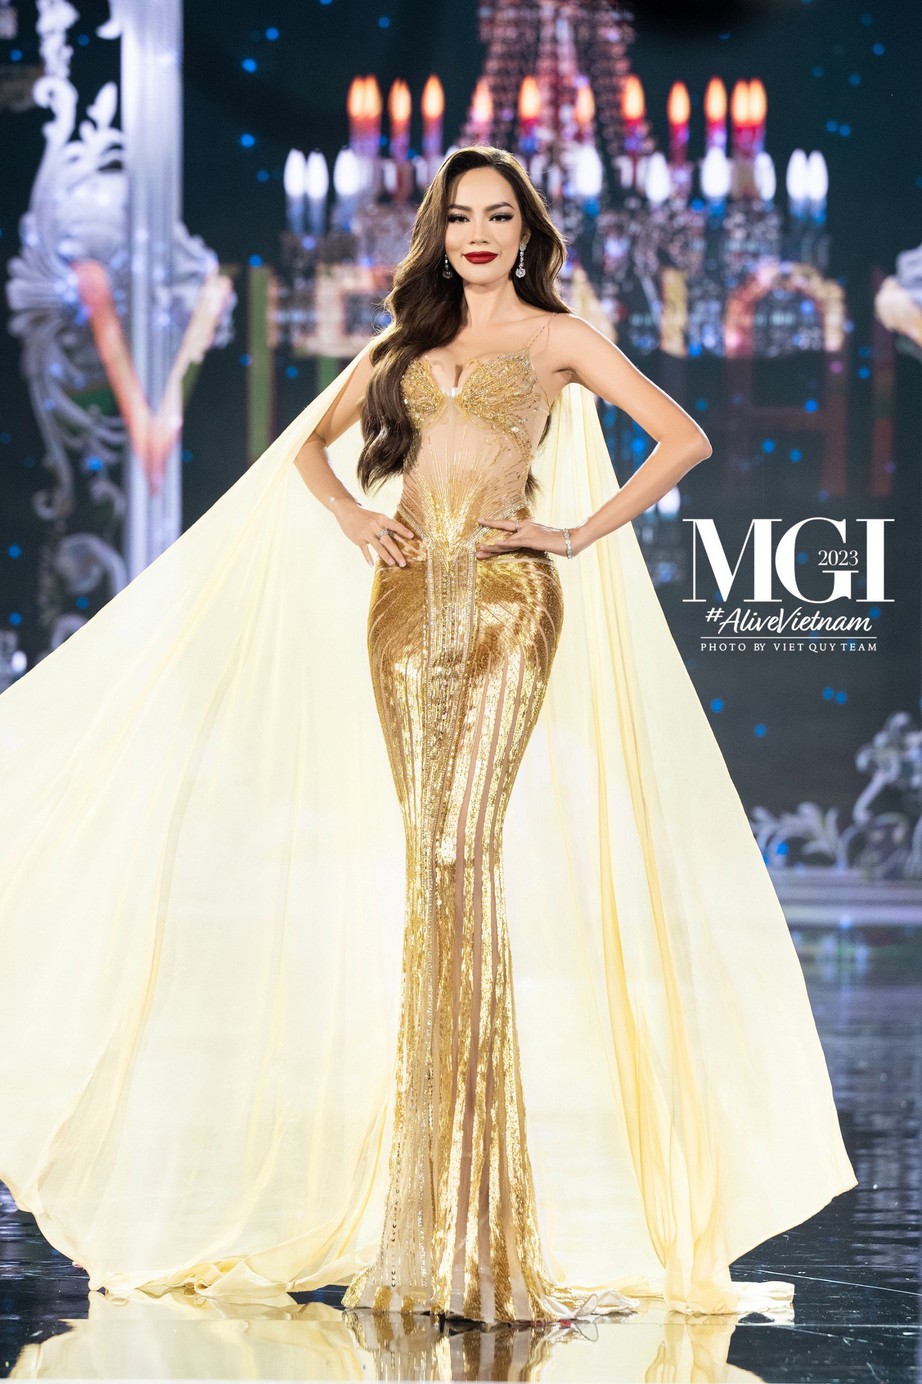 Lê Hoàng Phương với skill “thiên nga tung cánh” trong đêm bán kết Miss Grand International 2023 - ảnh 4